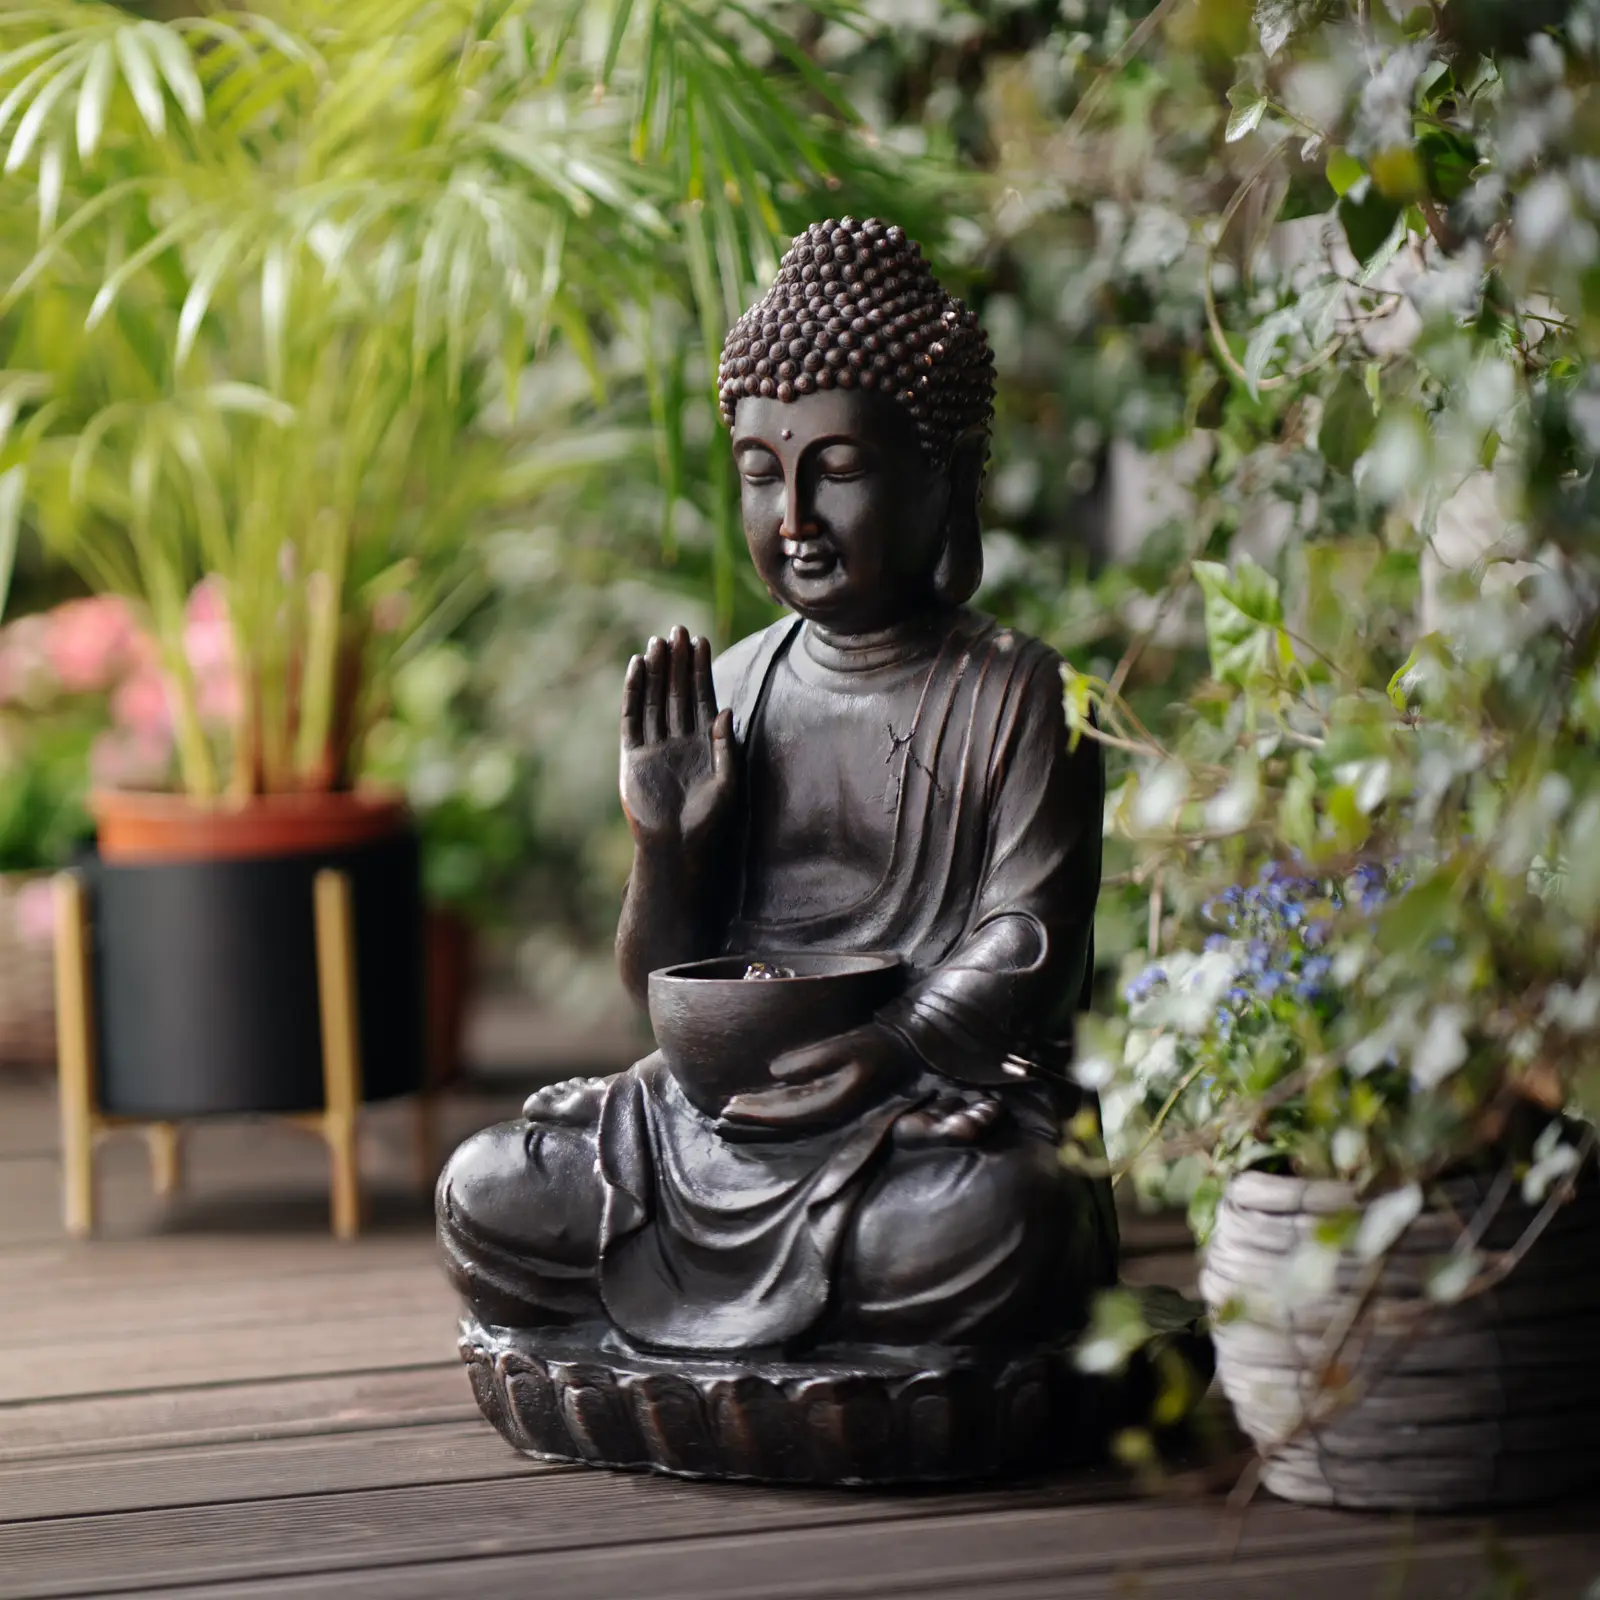 Solární zahradní fontána - zdravící figurka Buddhy - LED osvětlení